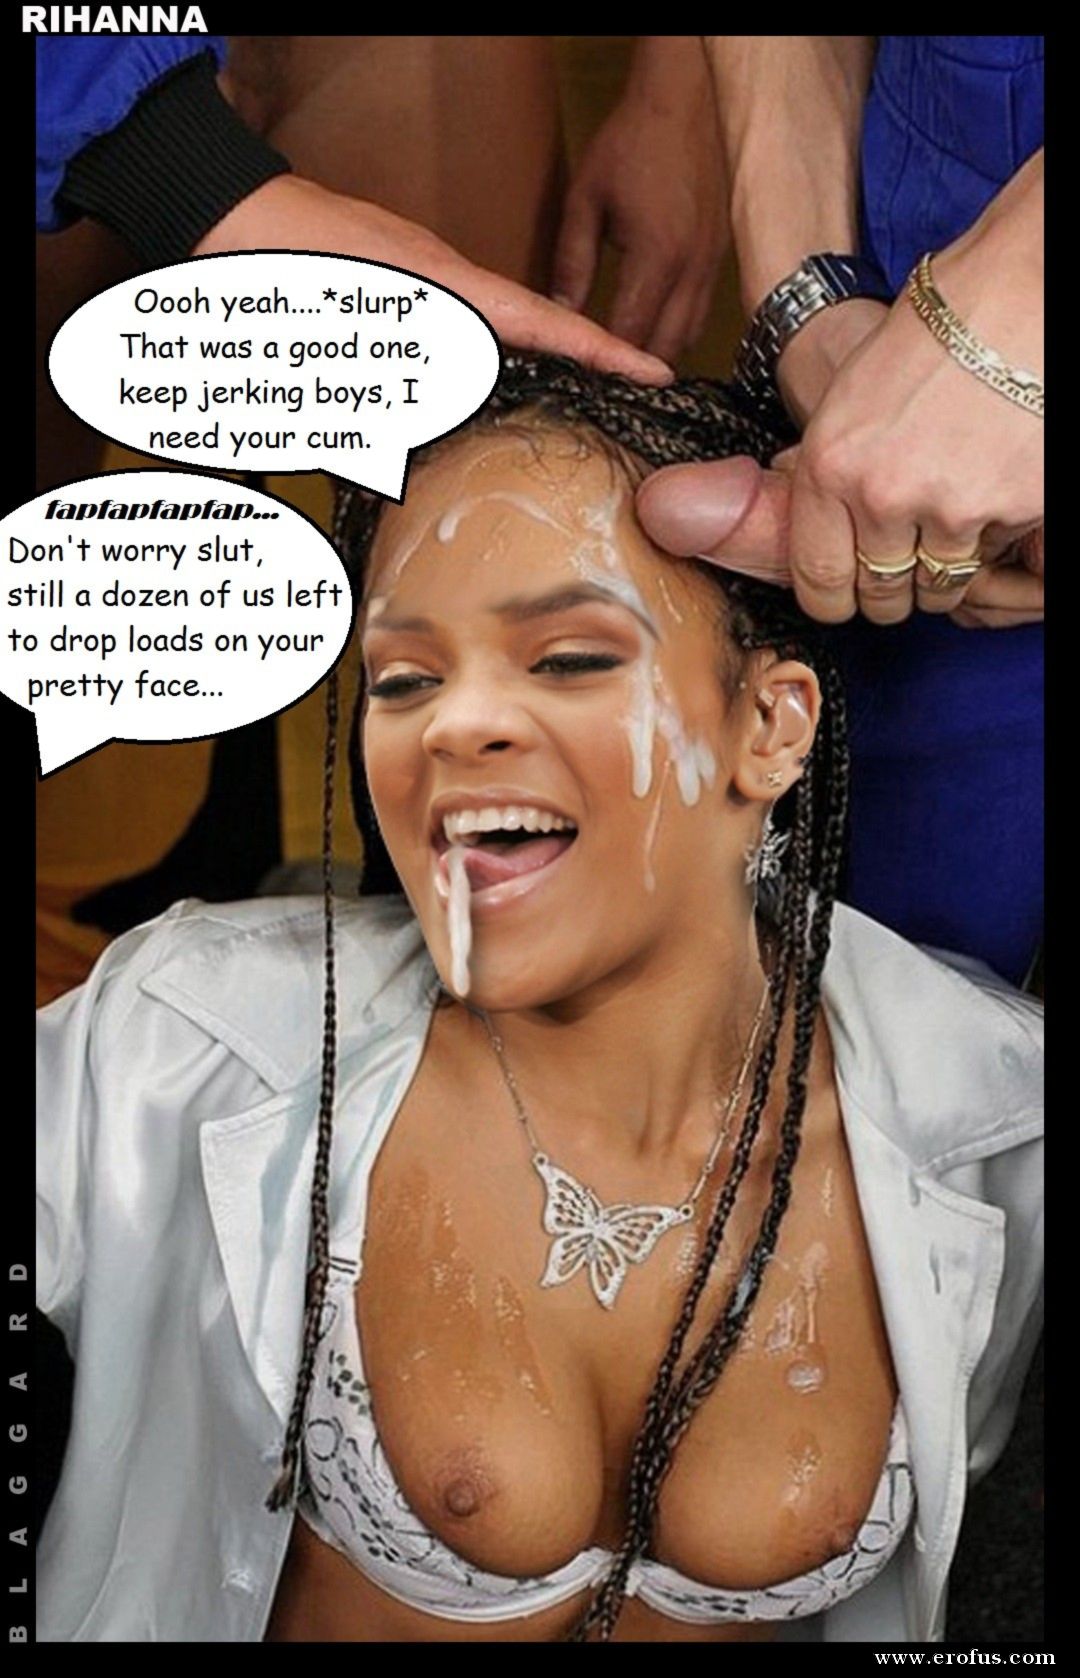 Rihanna Fakes